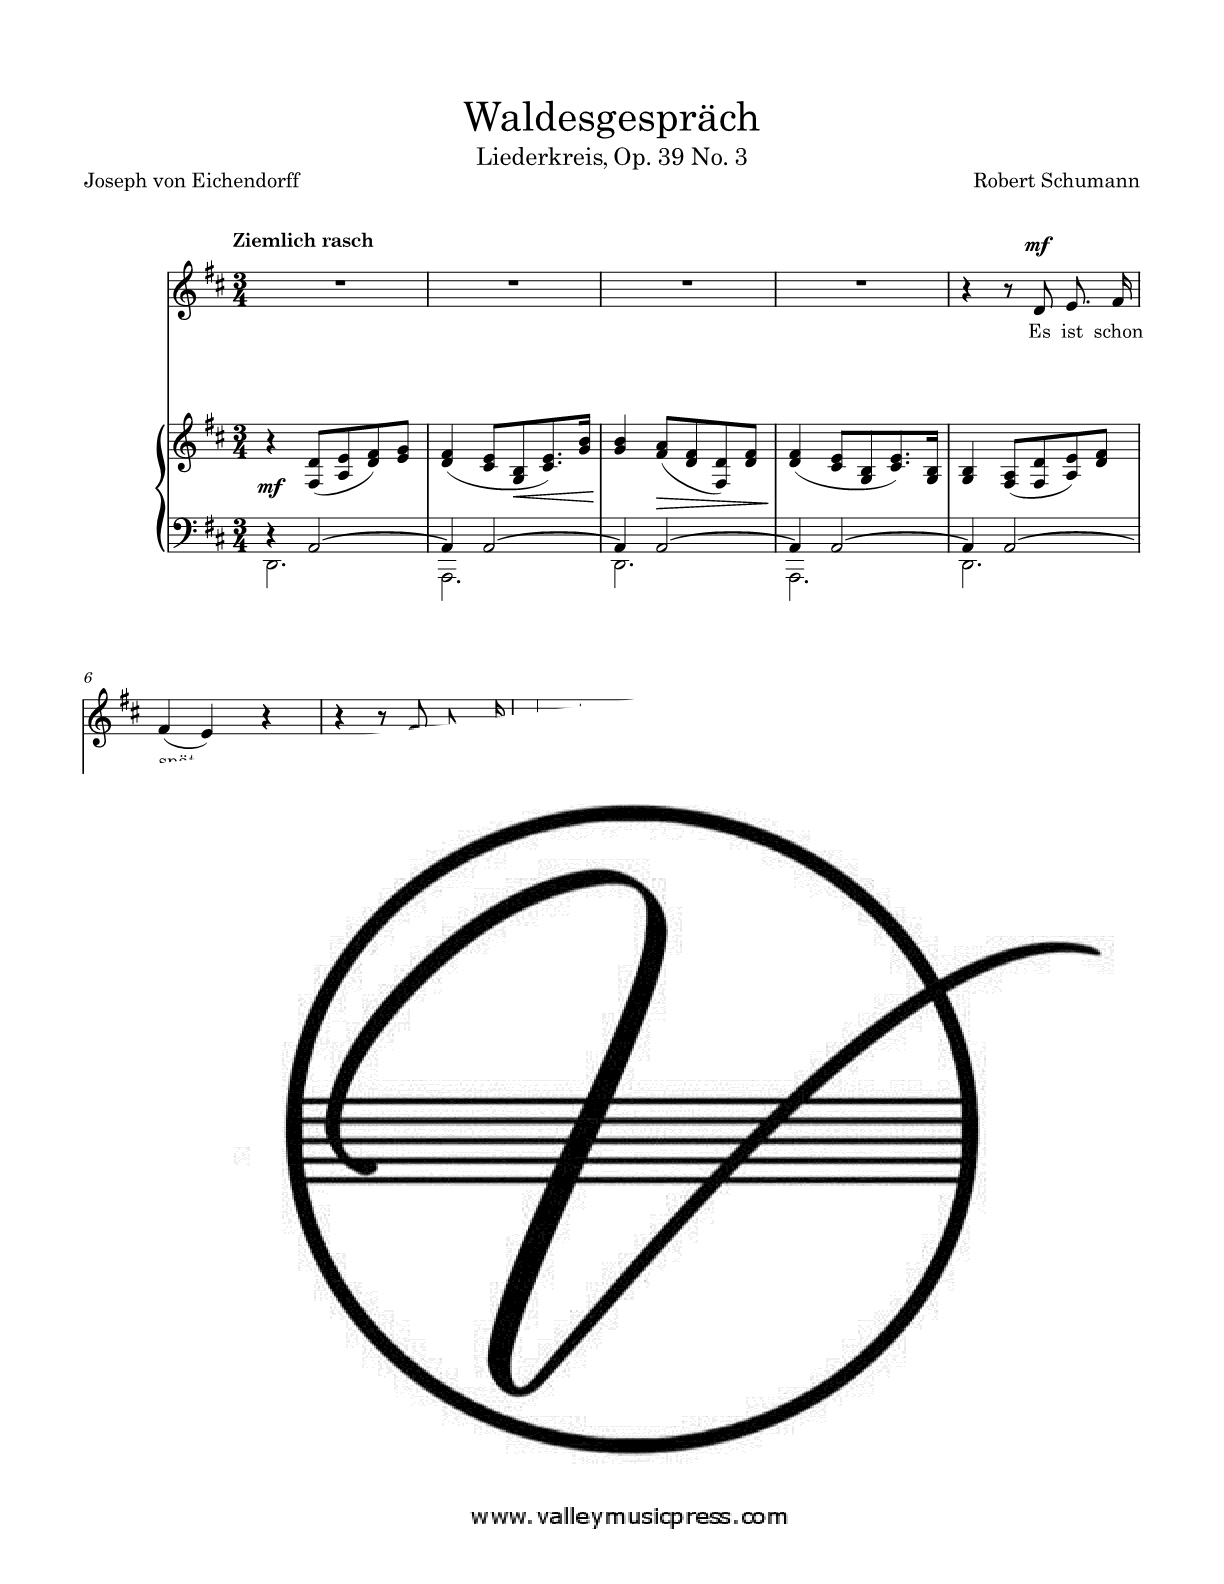 Schumann - Waldesgesprach Op. 39 No. 3 (Voice)